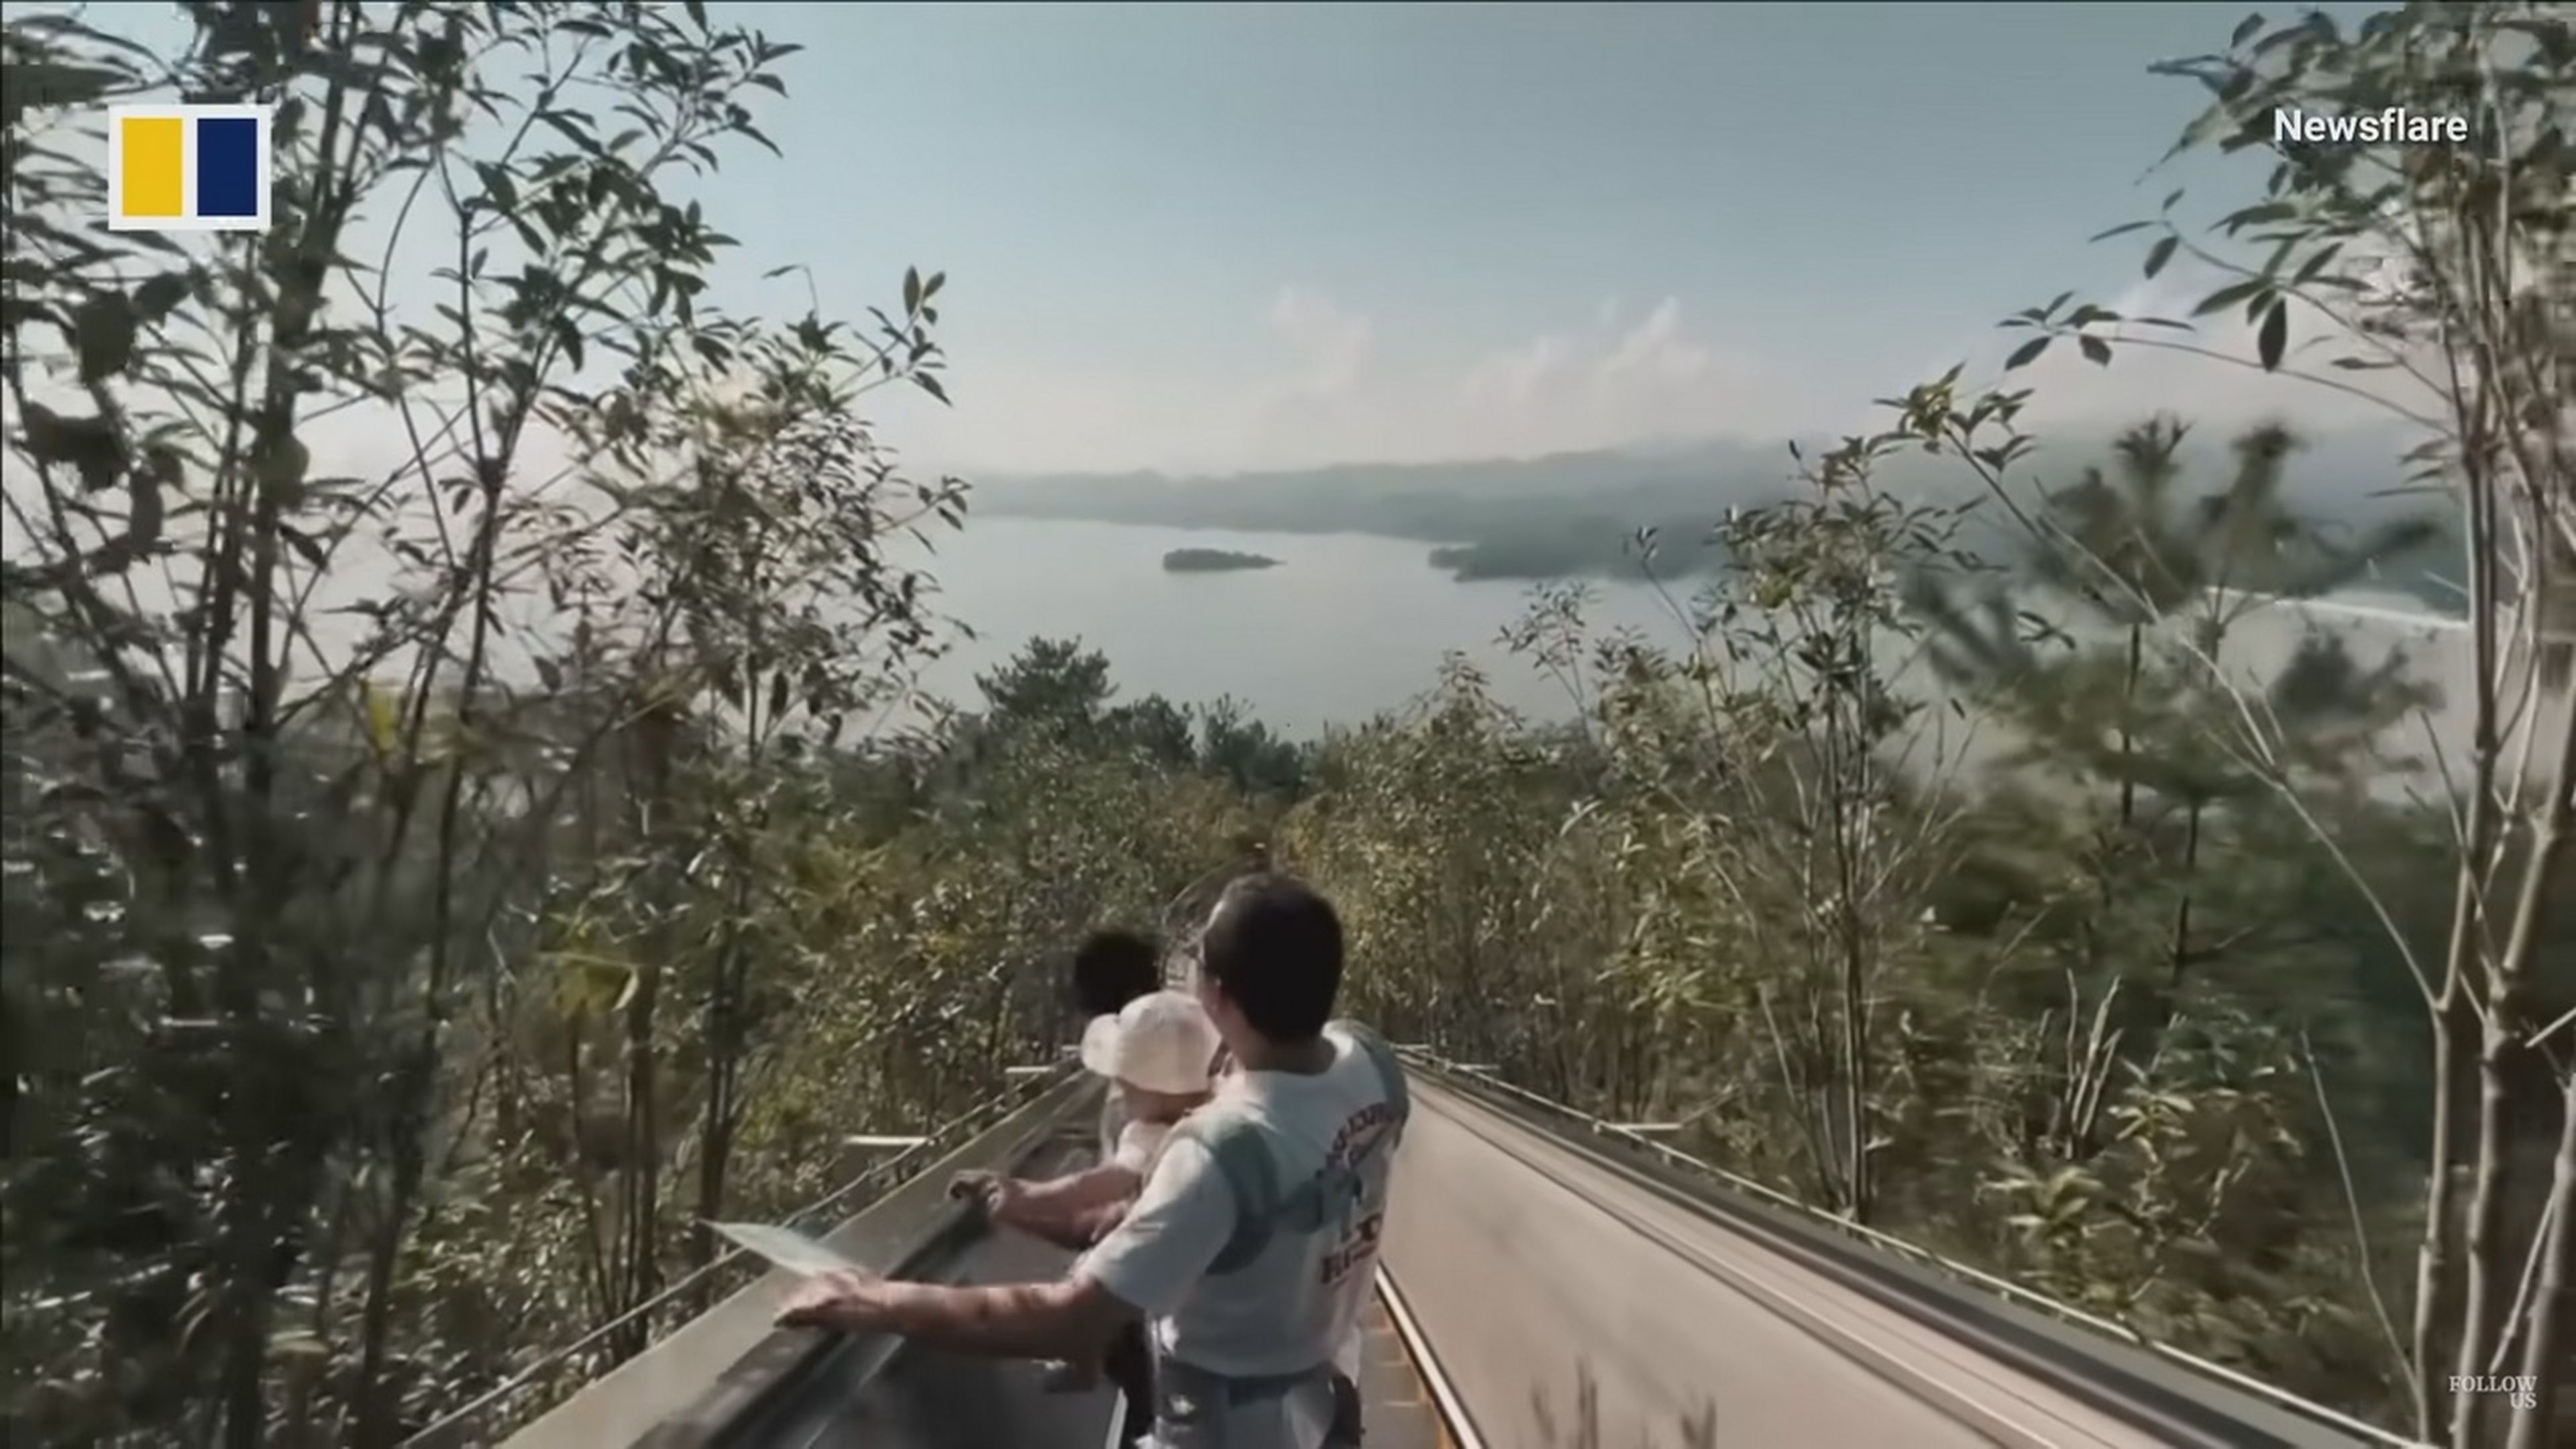 China la lía al poner una escalera automática de 350 metros para subir una montaña